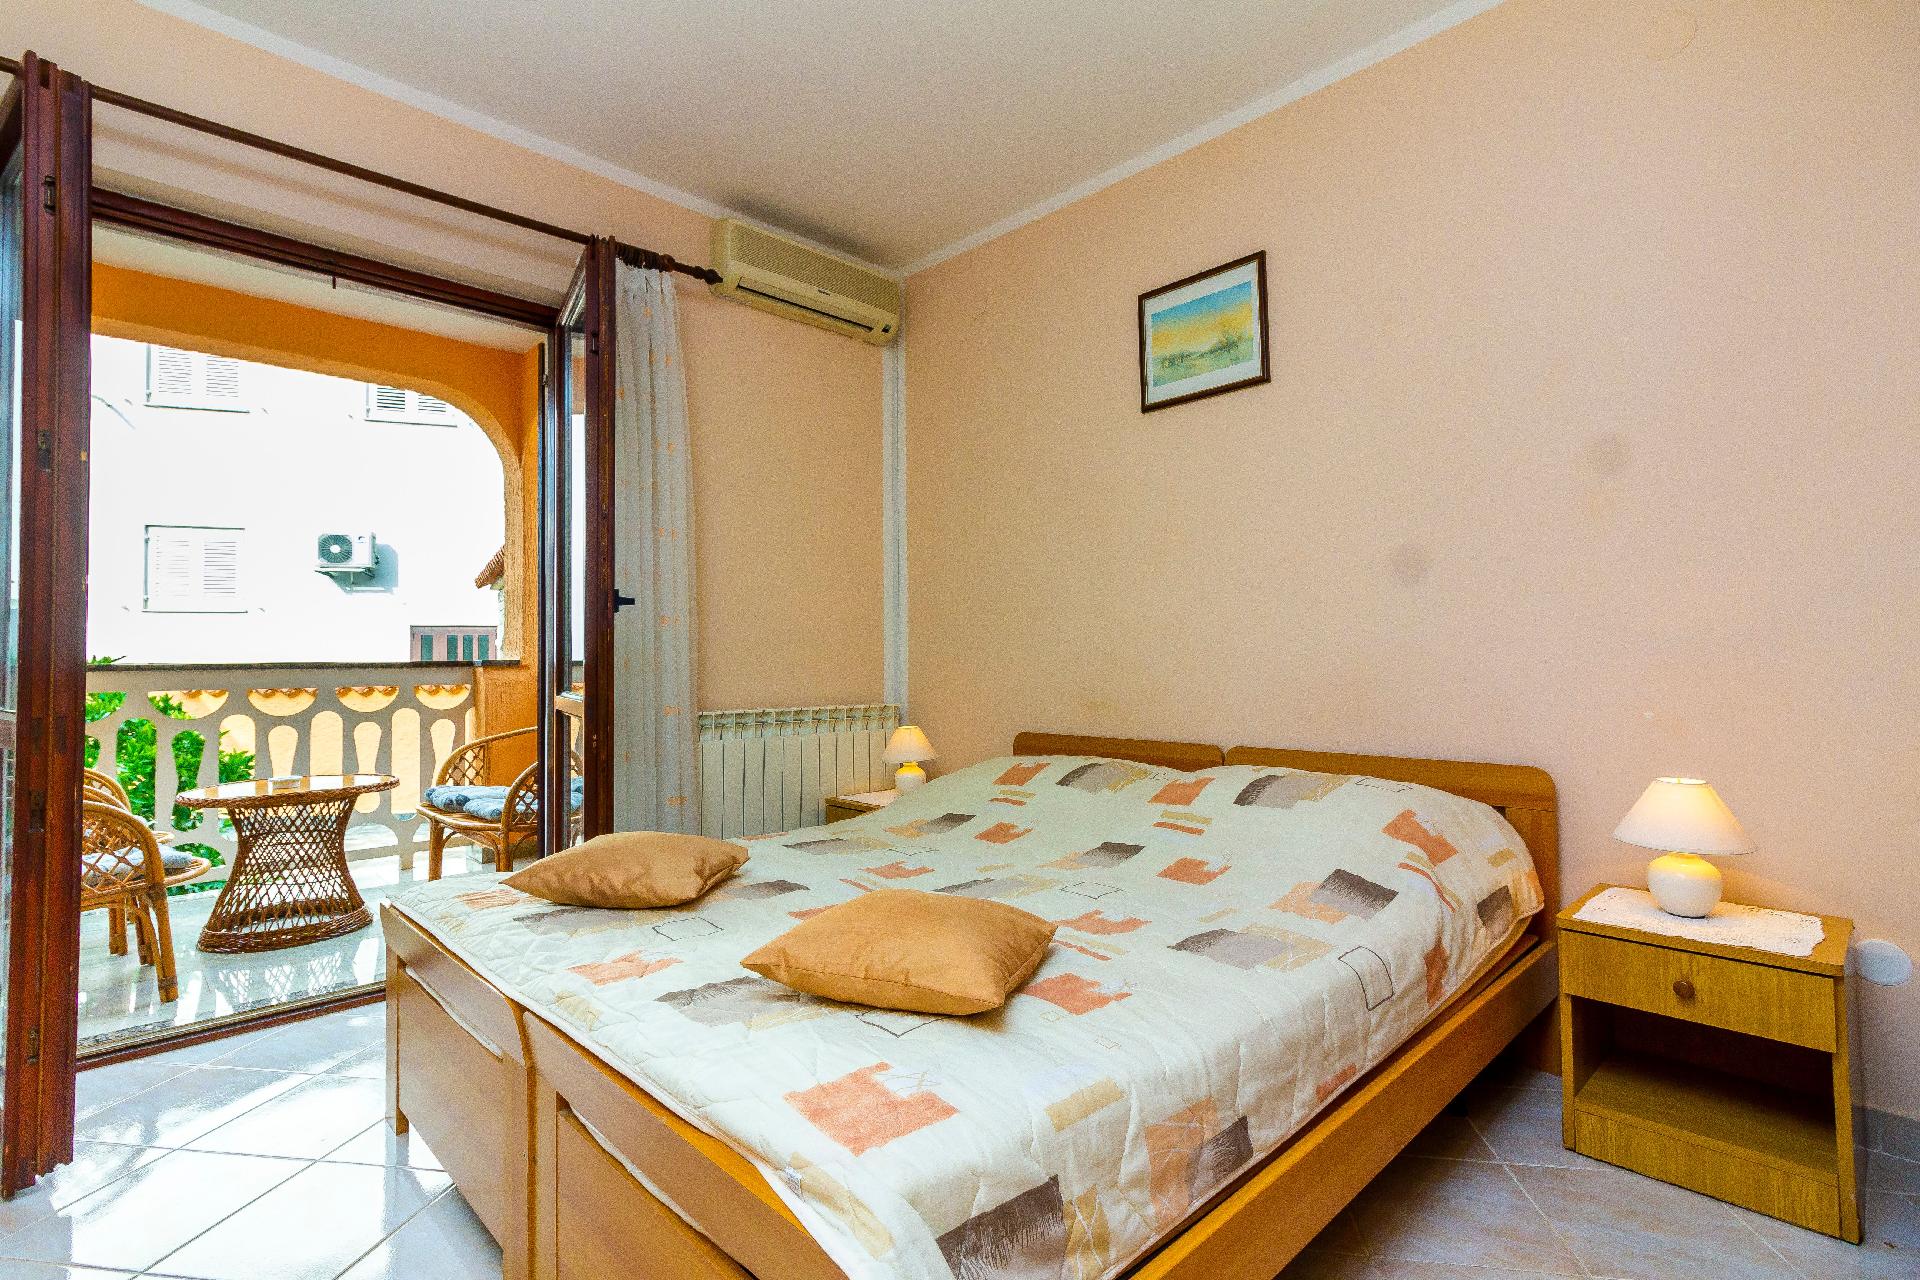 Appartement in Fa?ana mit Möbliertem Balkon Ferienhaus in Istrien